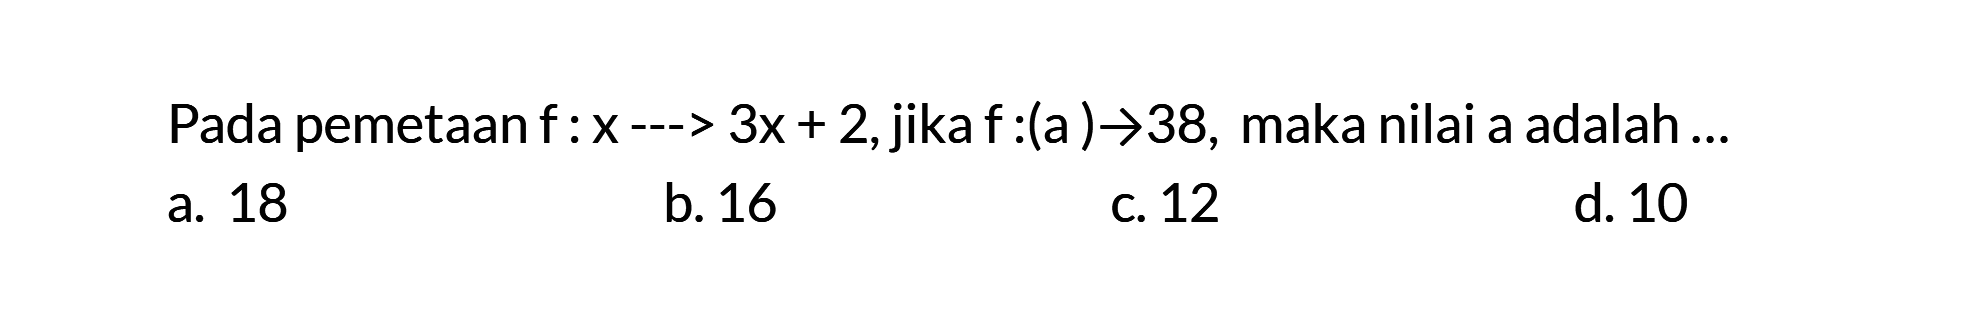 Pada pemetaan f: x ---> 3x + 2, jika f:(a) -> -38, maka nilai a adalah...